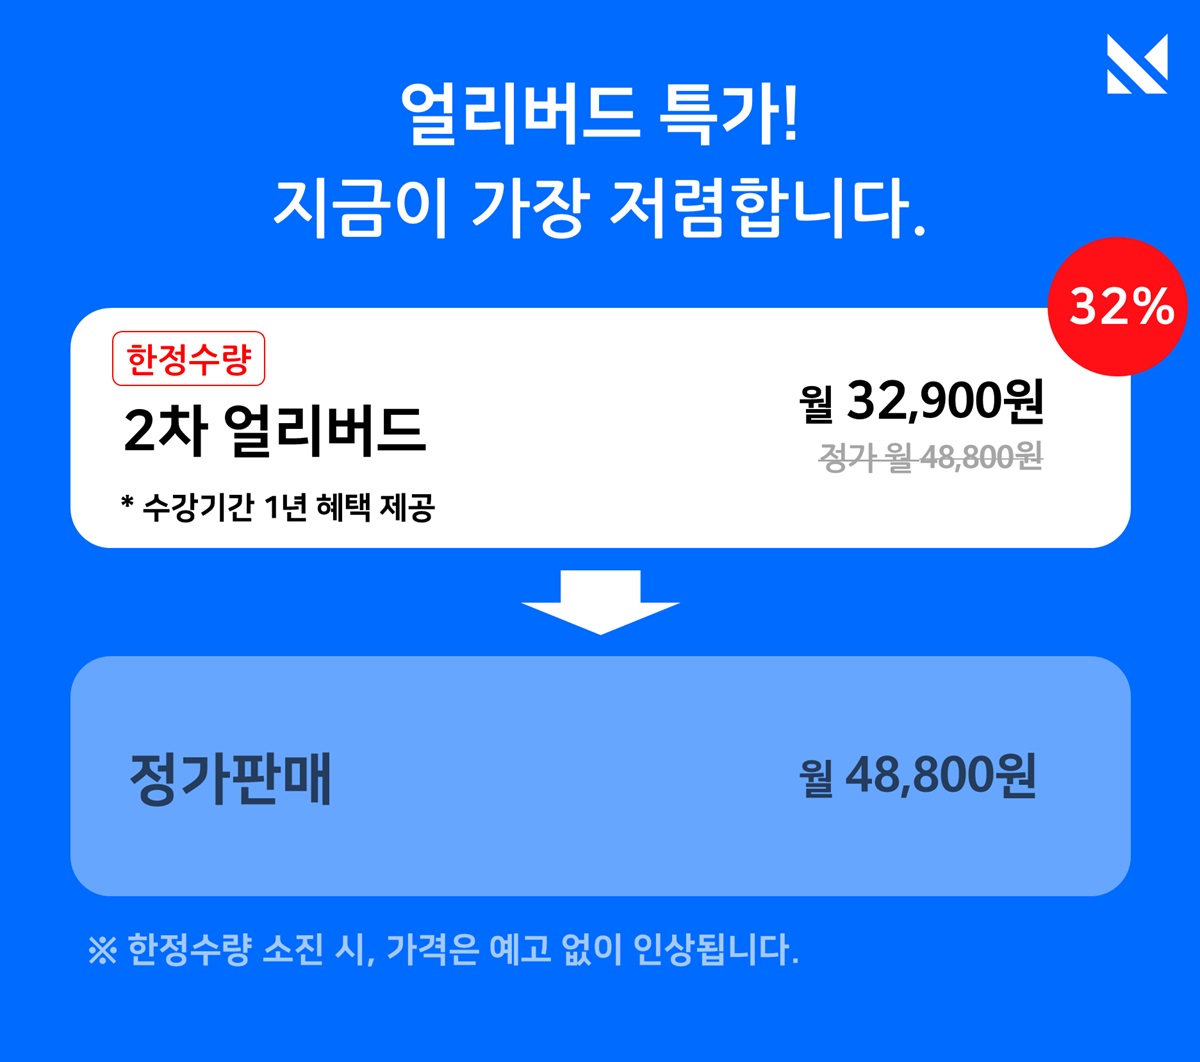 상승효과 2차얼리버드.jpg